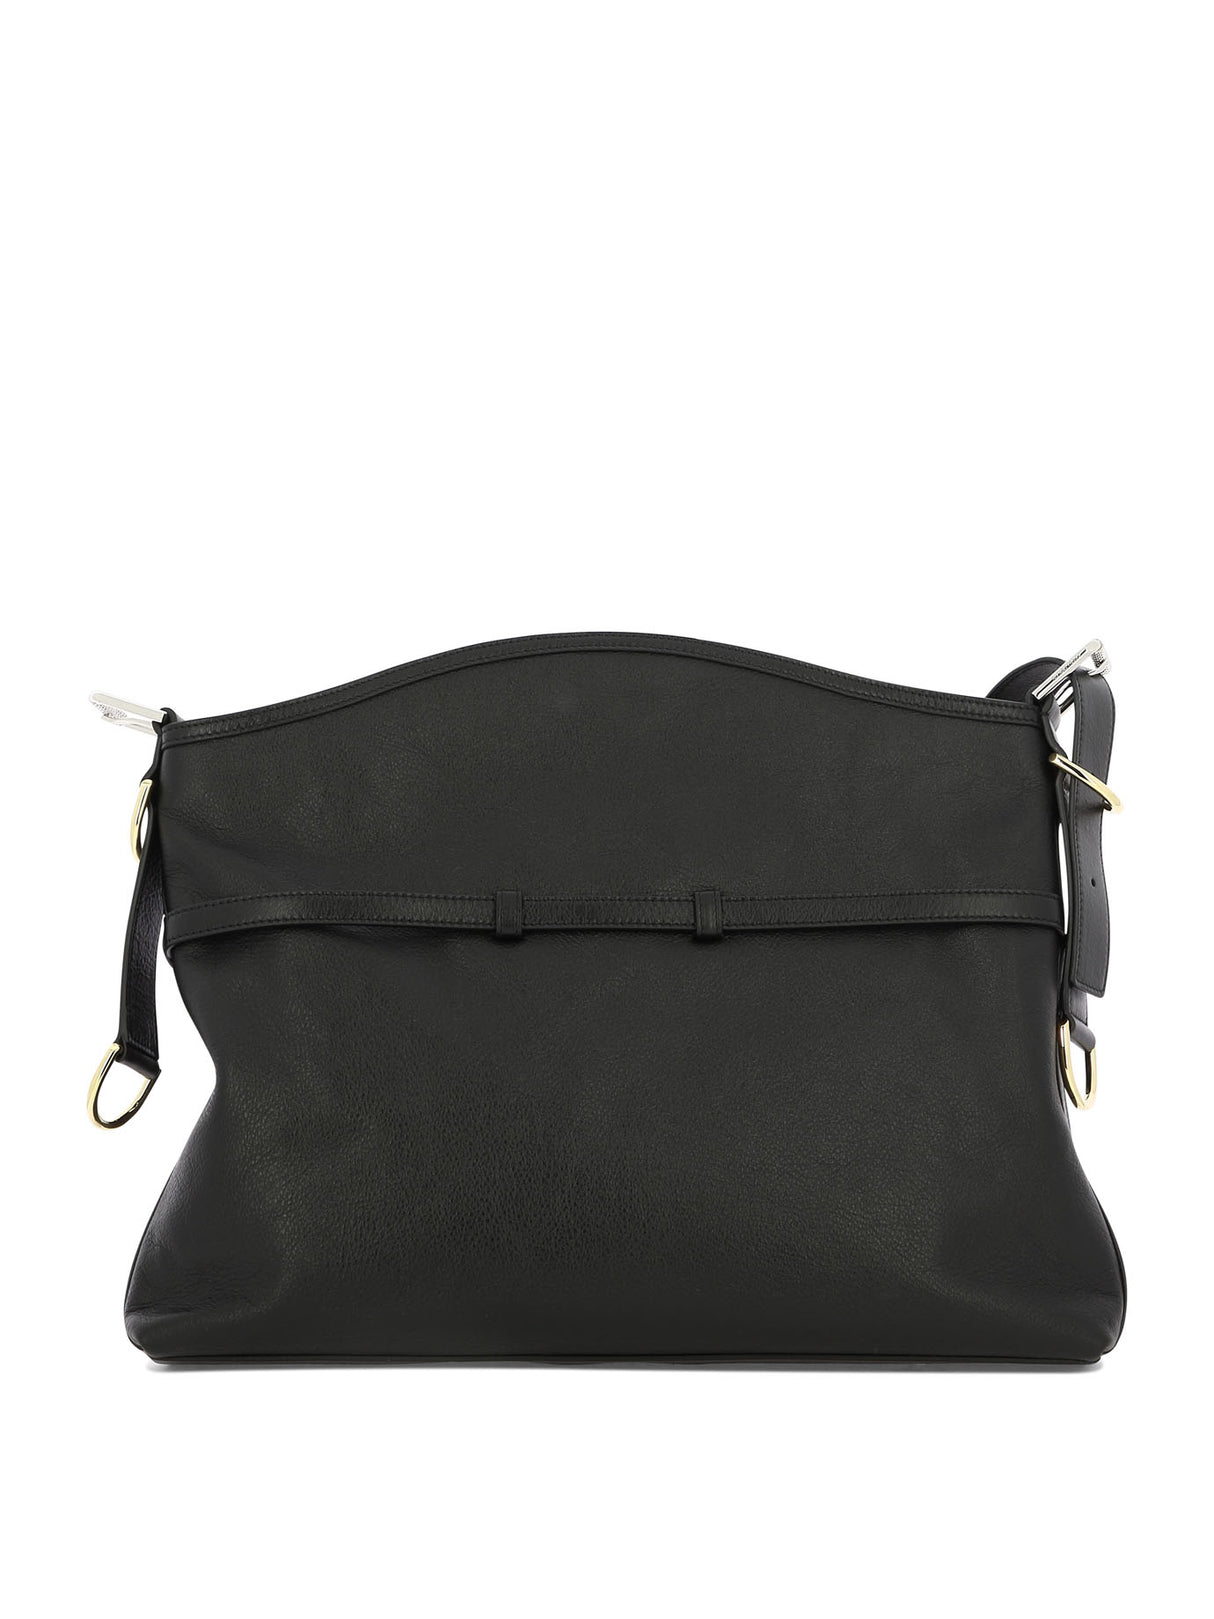 Túi xách vai da đen tinh tế Voyou kích thước trung bình với điểm nhấn kim loại - 40x27x6.5 cm